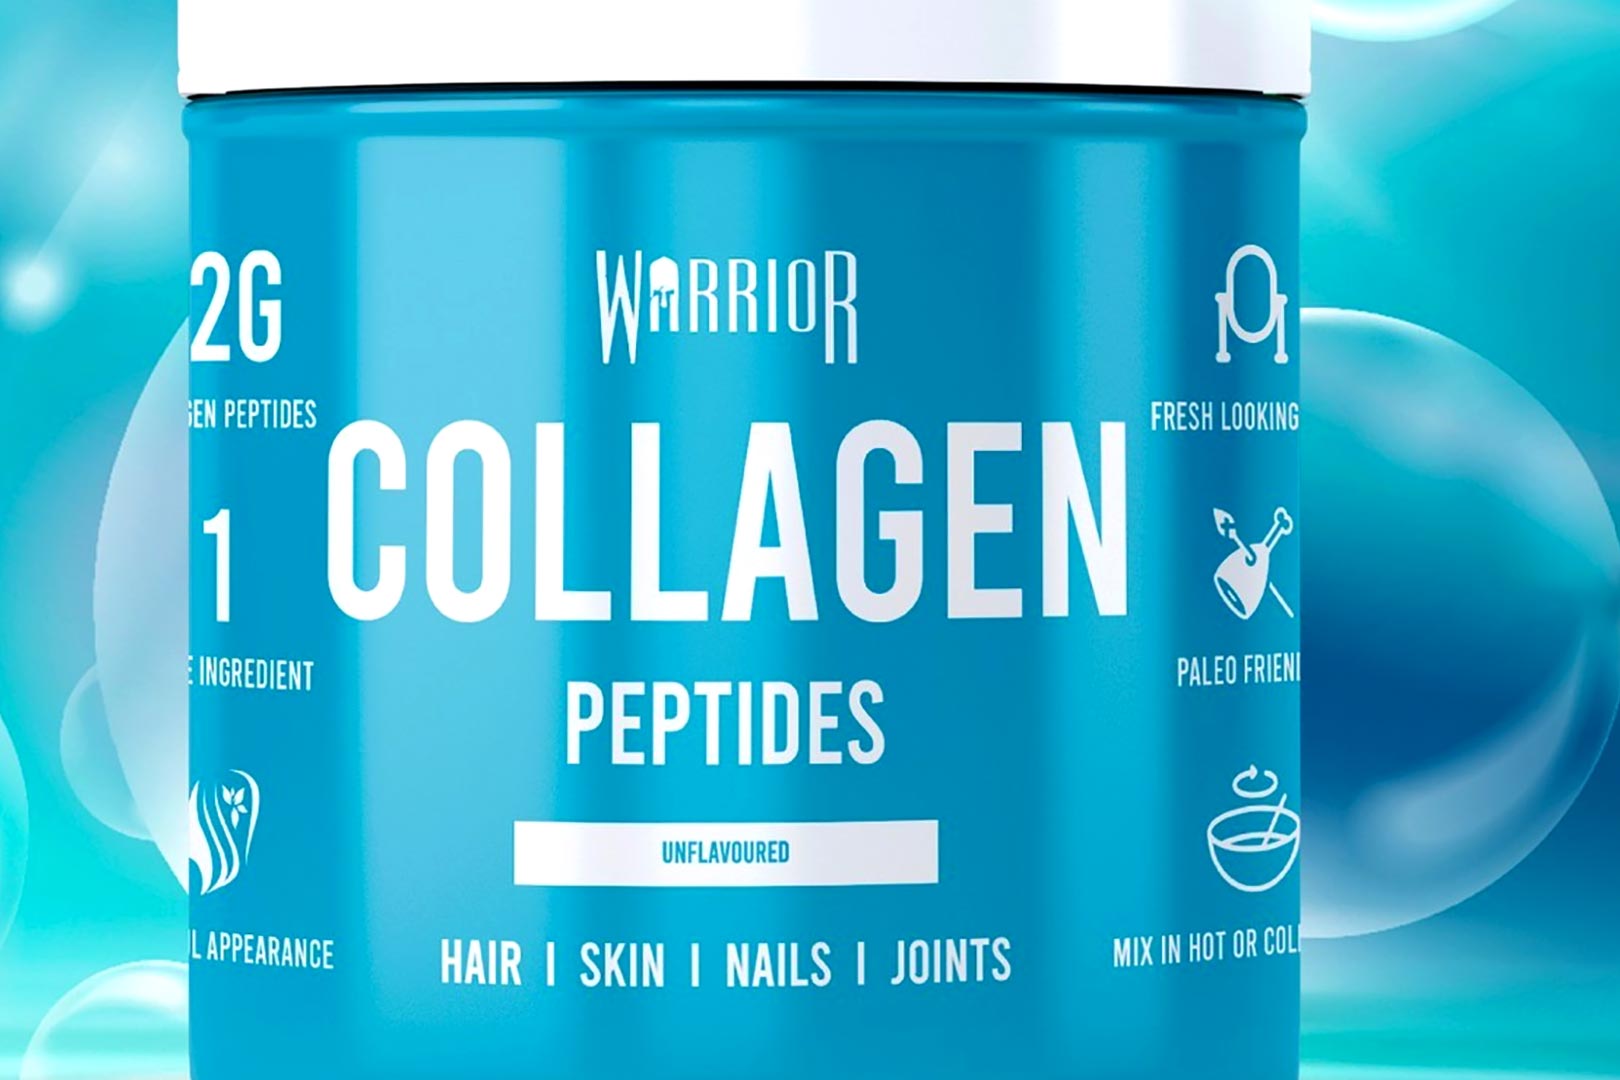 Warrior Collagen Peptides